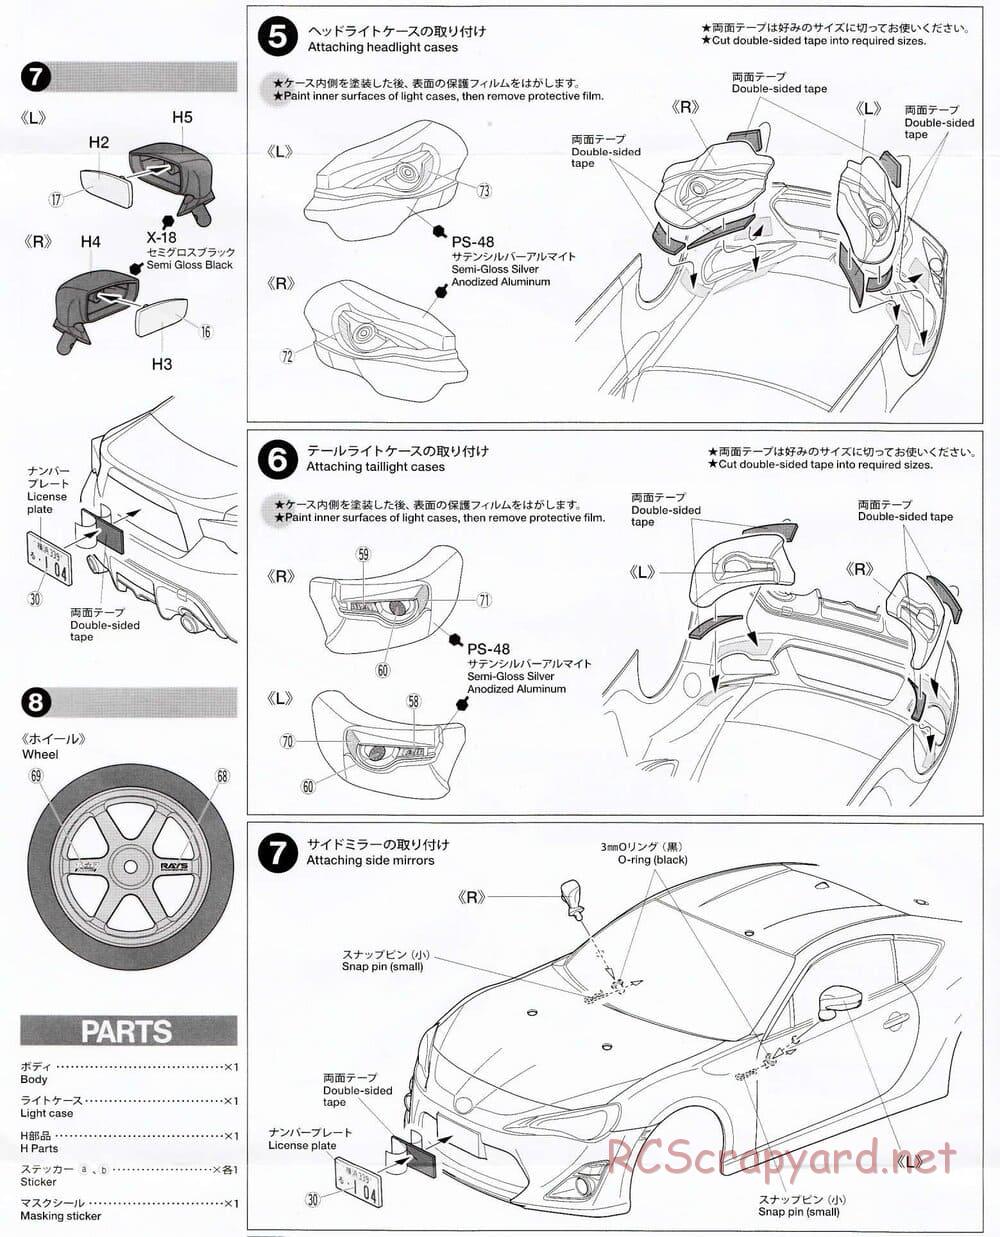 Tamiya - GAZOO Racing TRD 86 - XV-01 Chassis - Body Manual - Page 5